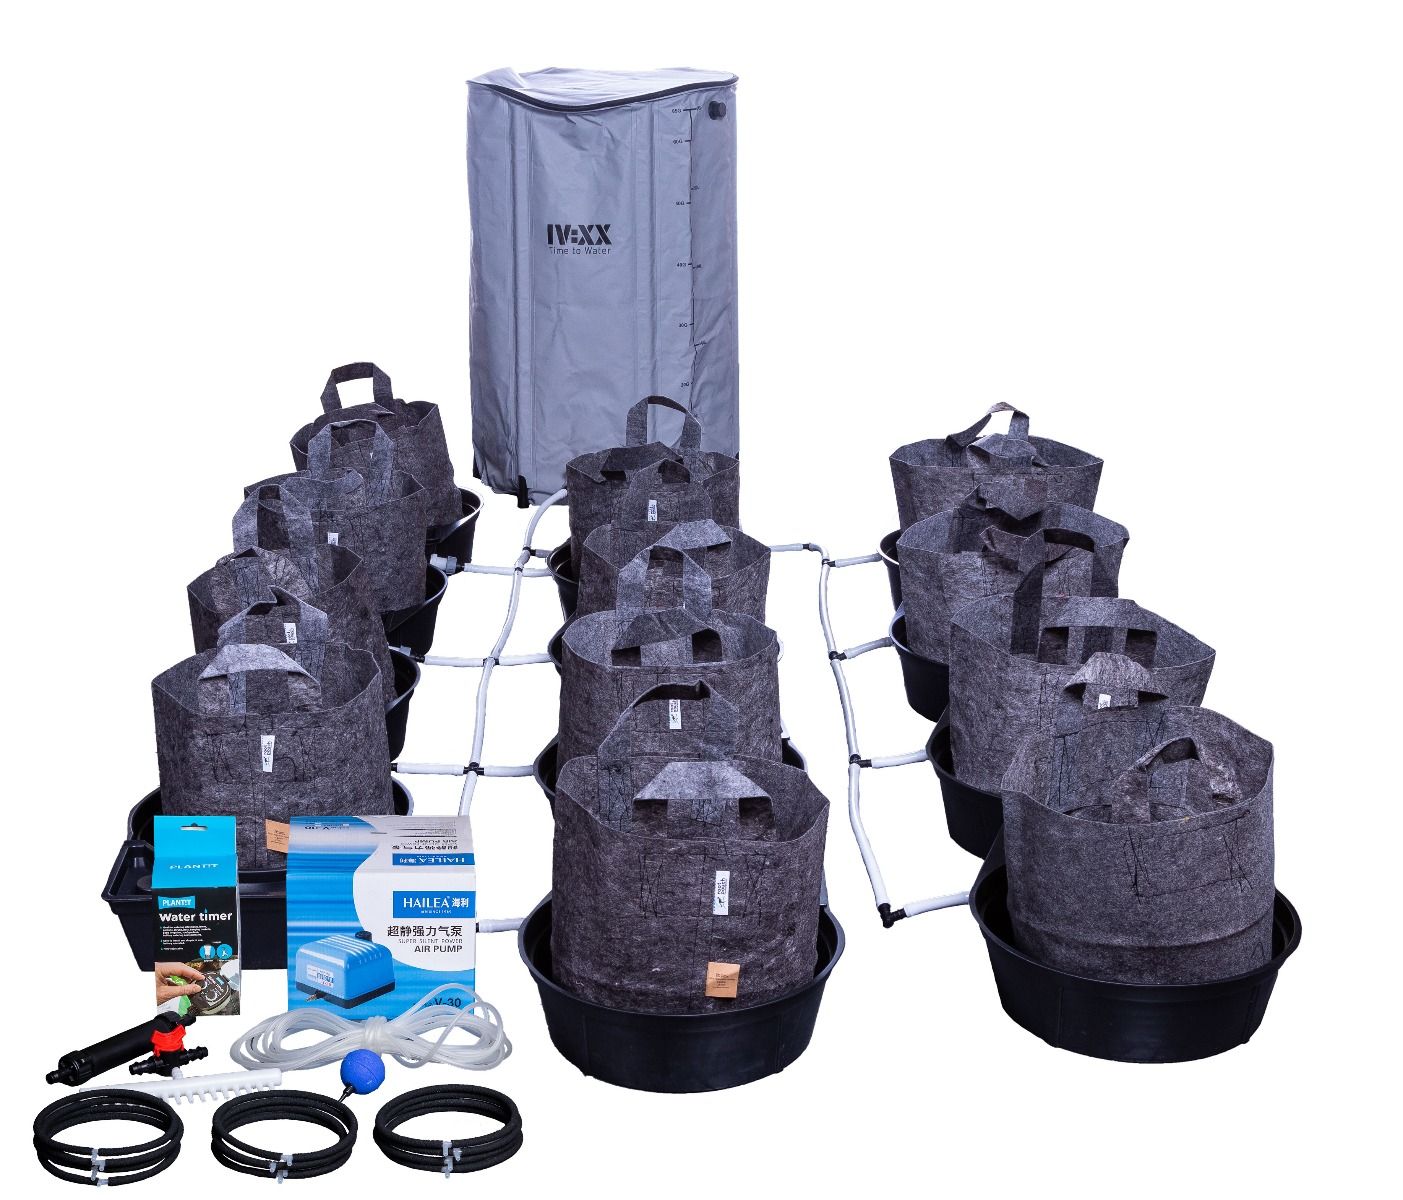 MegaPot Single Pot 39L Complete Kits